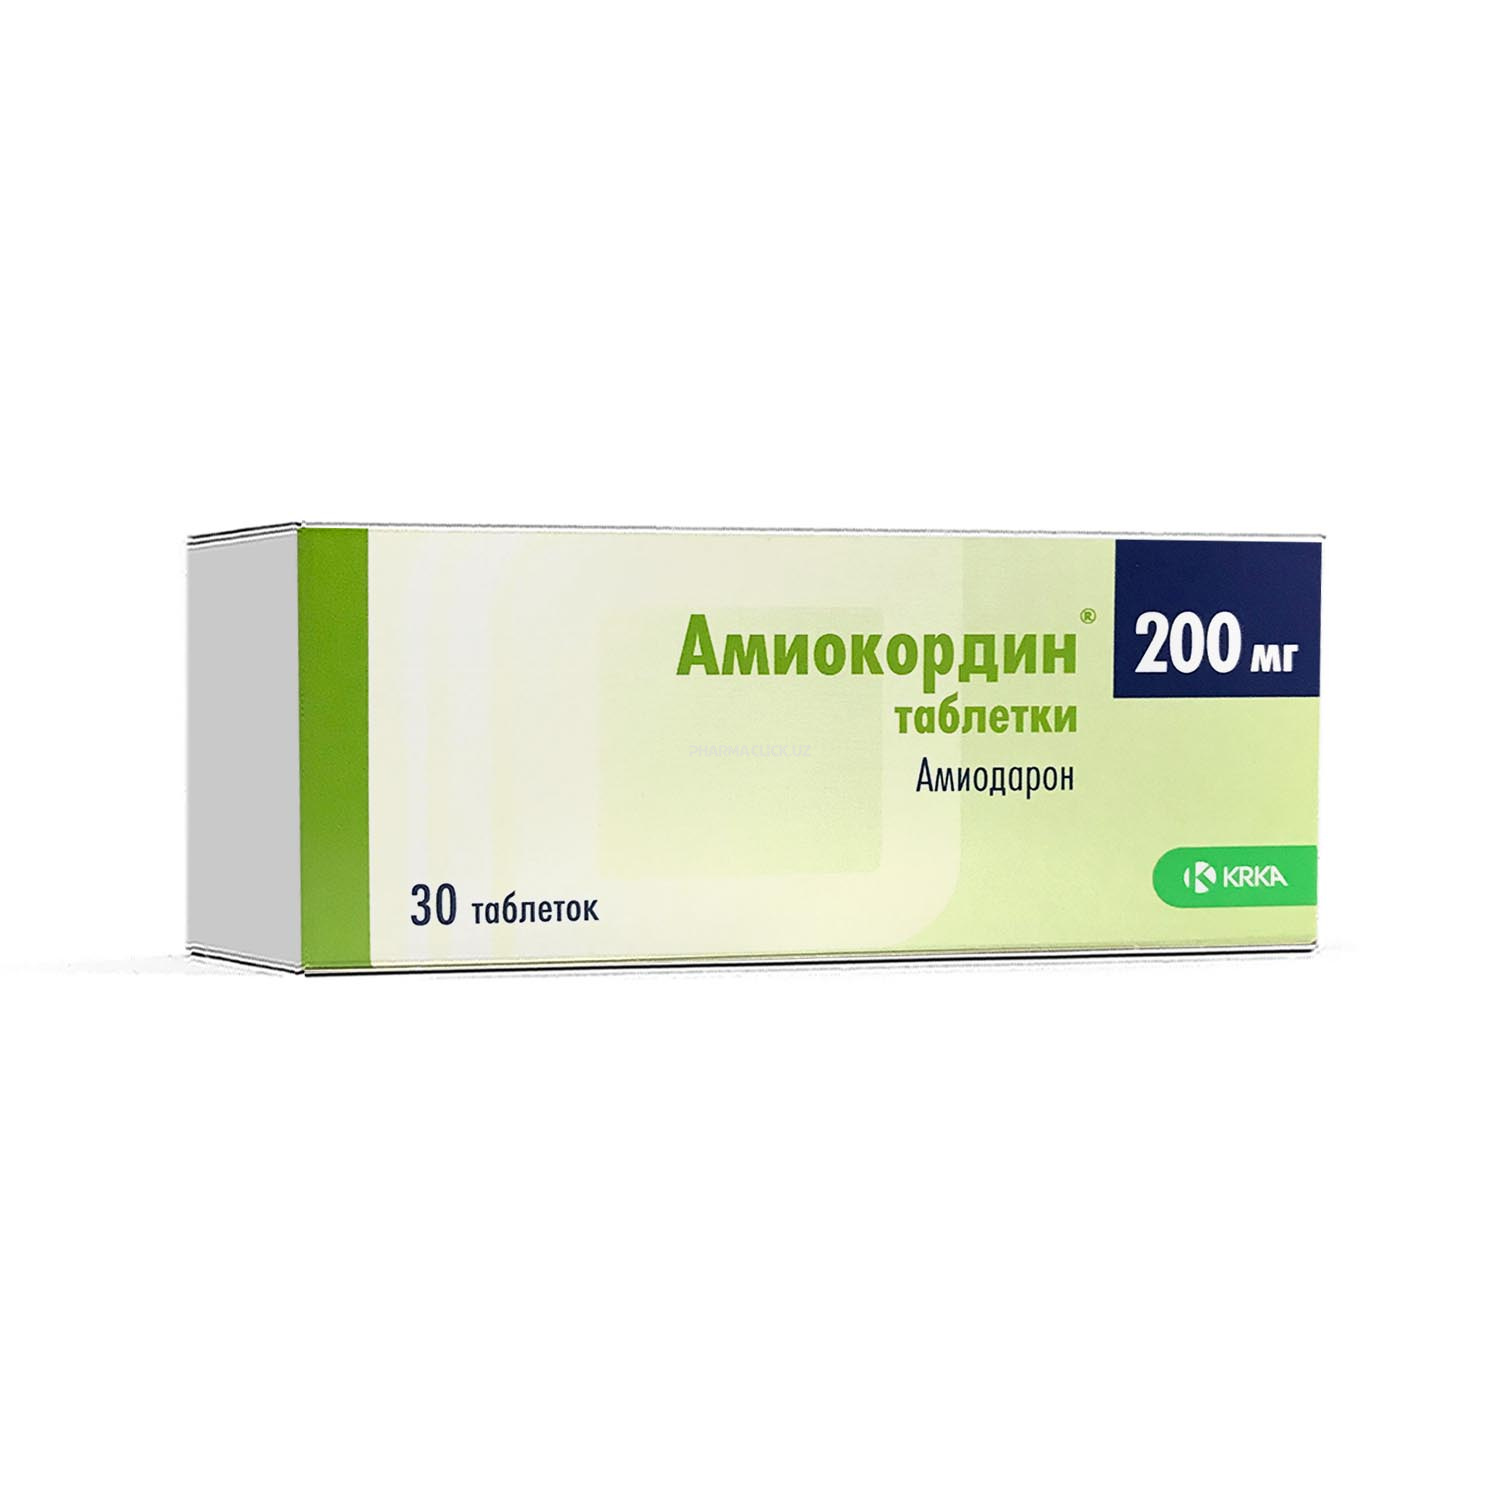 Amiokordin tab. 200 mg. №30